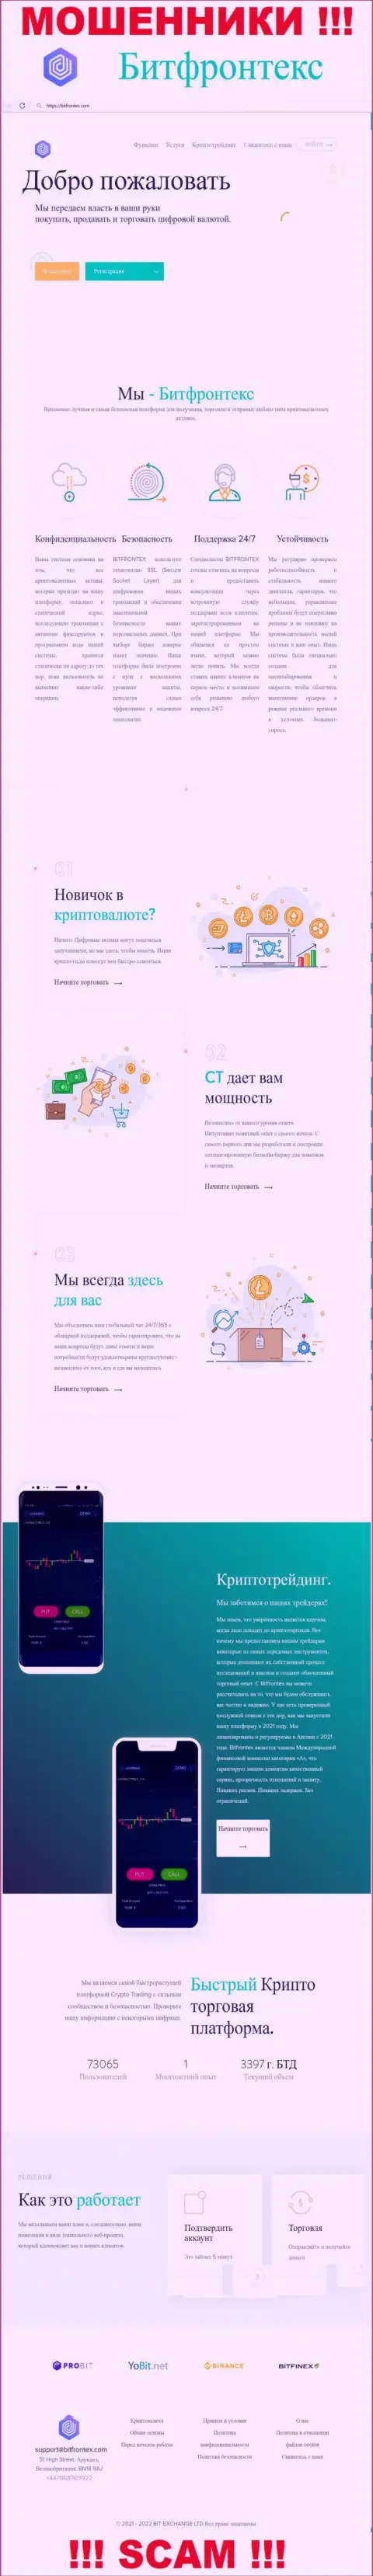 Официальная интернет страничка жульнического проекта Бит Фронтекс